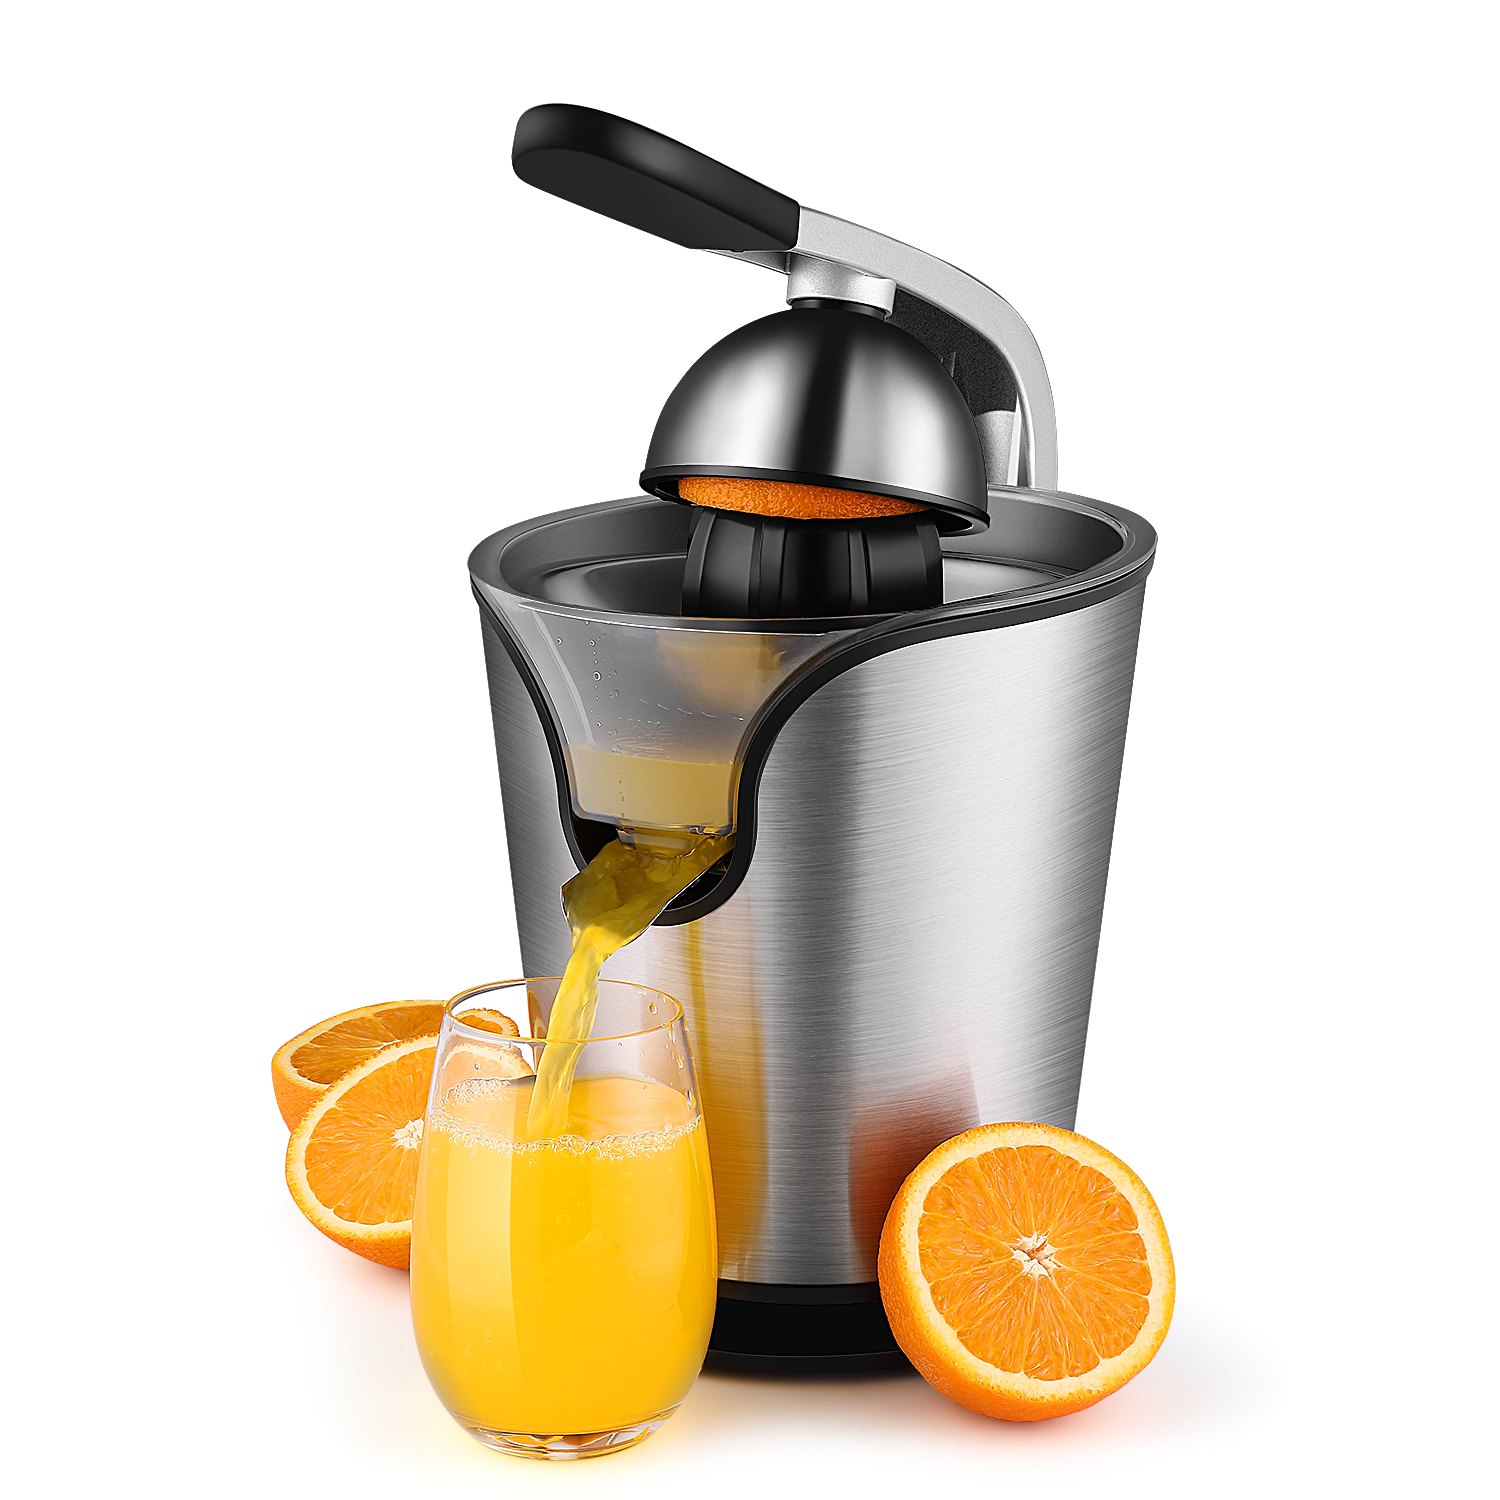 آب پرتقال گیر | فروشگاه اینترنتی خرید و فروش انواع آب پرتقال گیر با بهترین قیمت